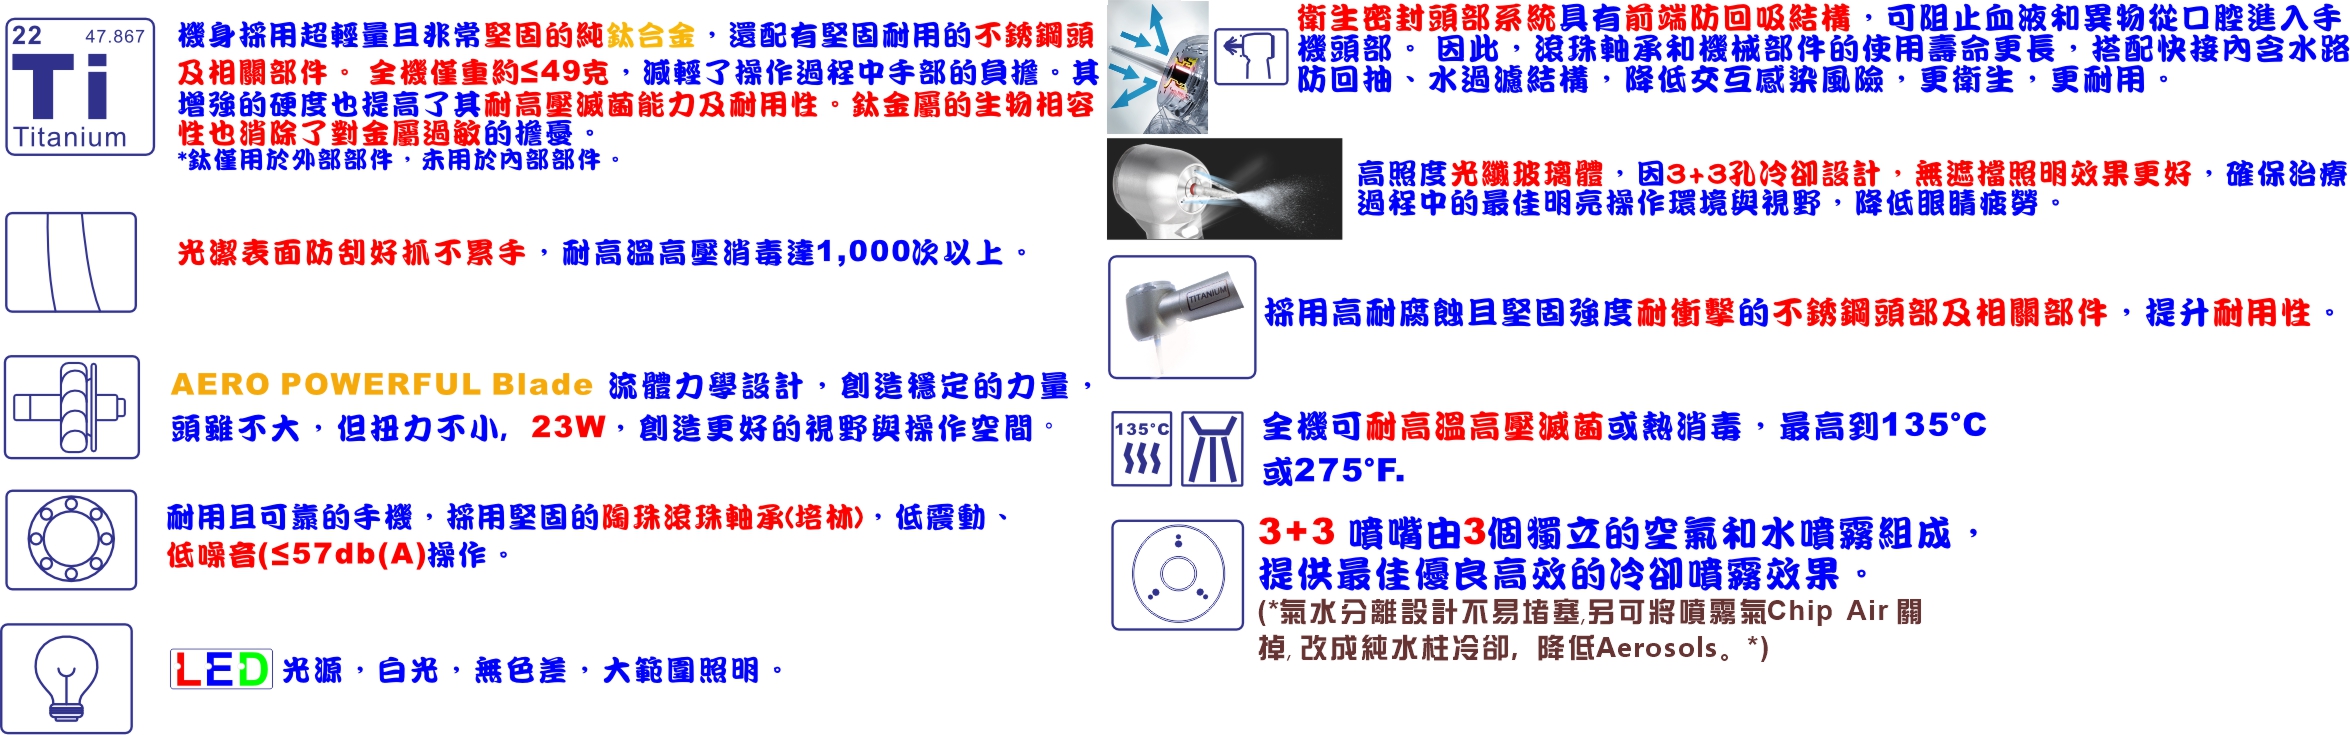 Ti-Premium LUX 600 系列中文特點-1